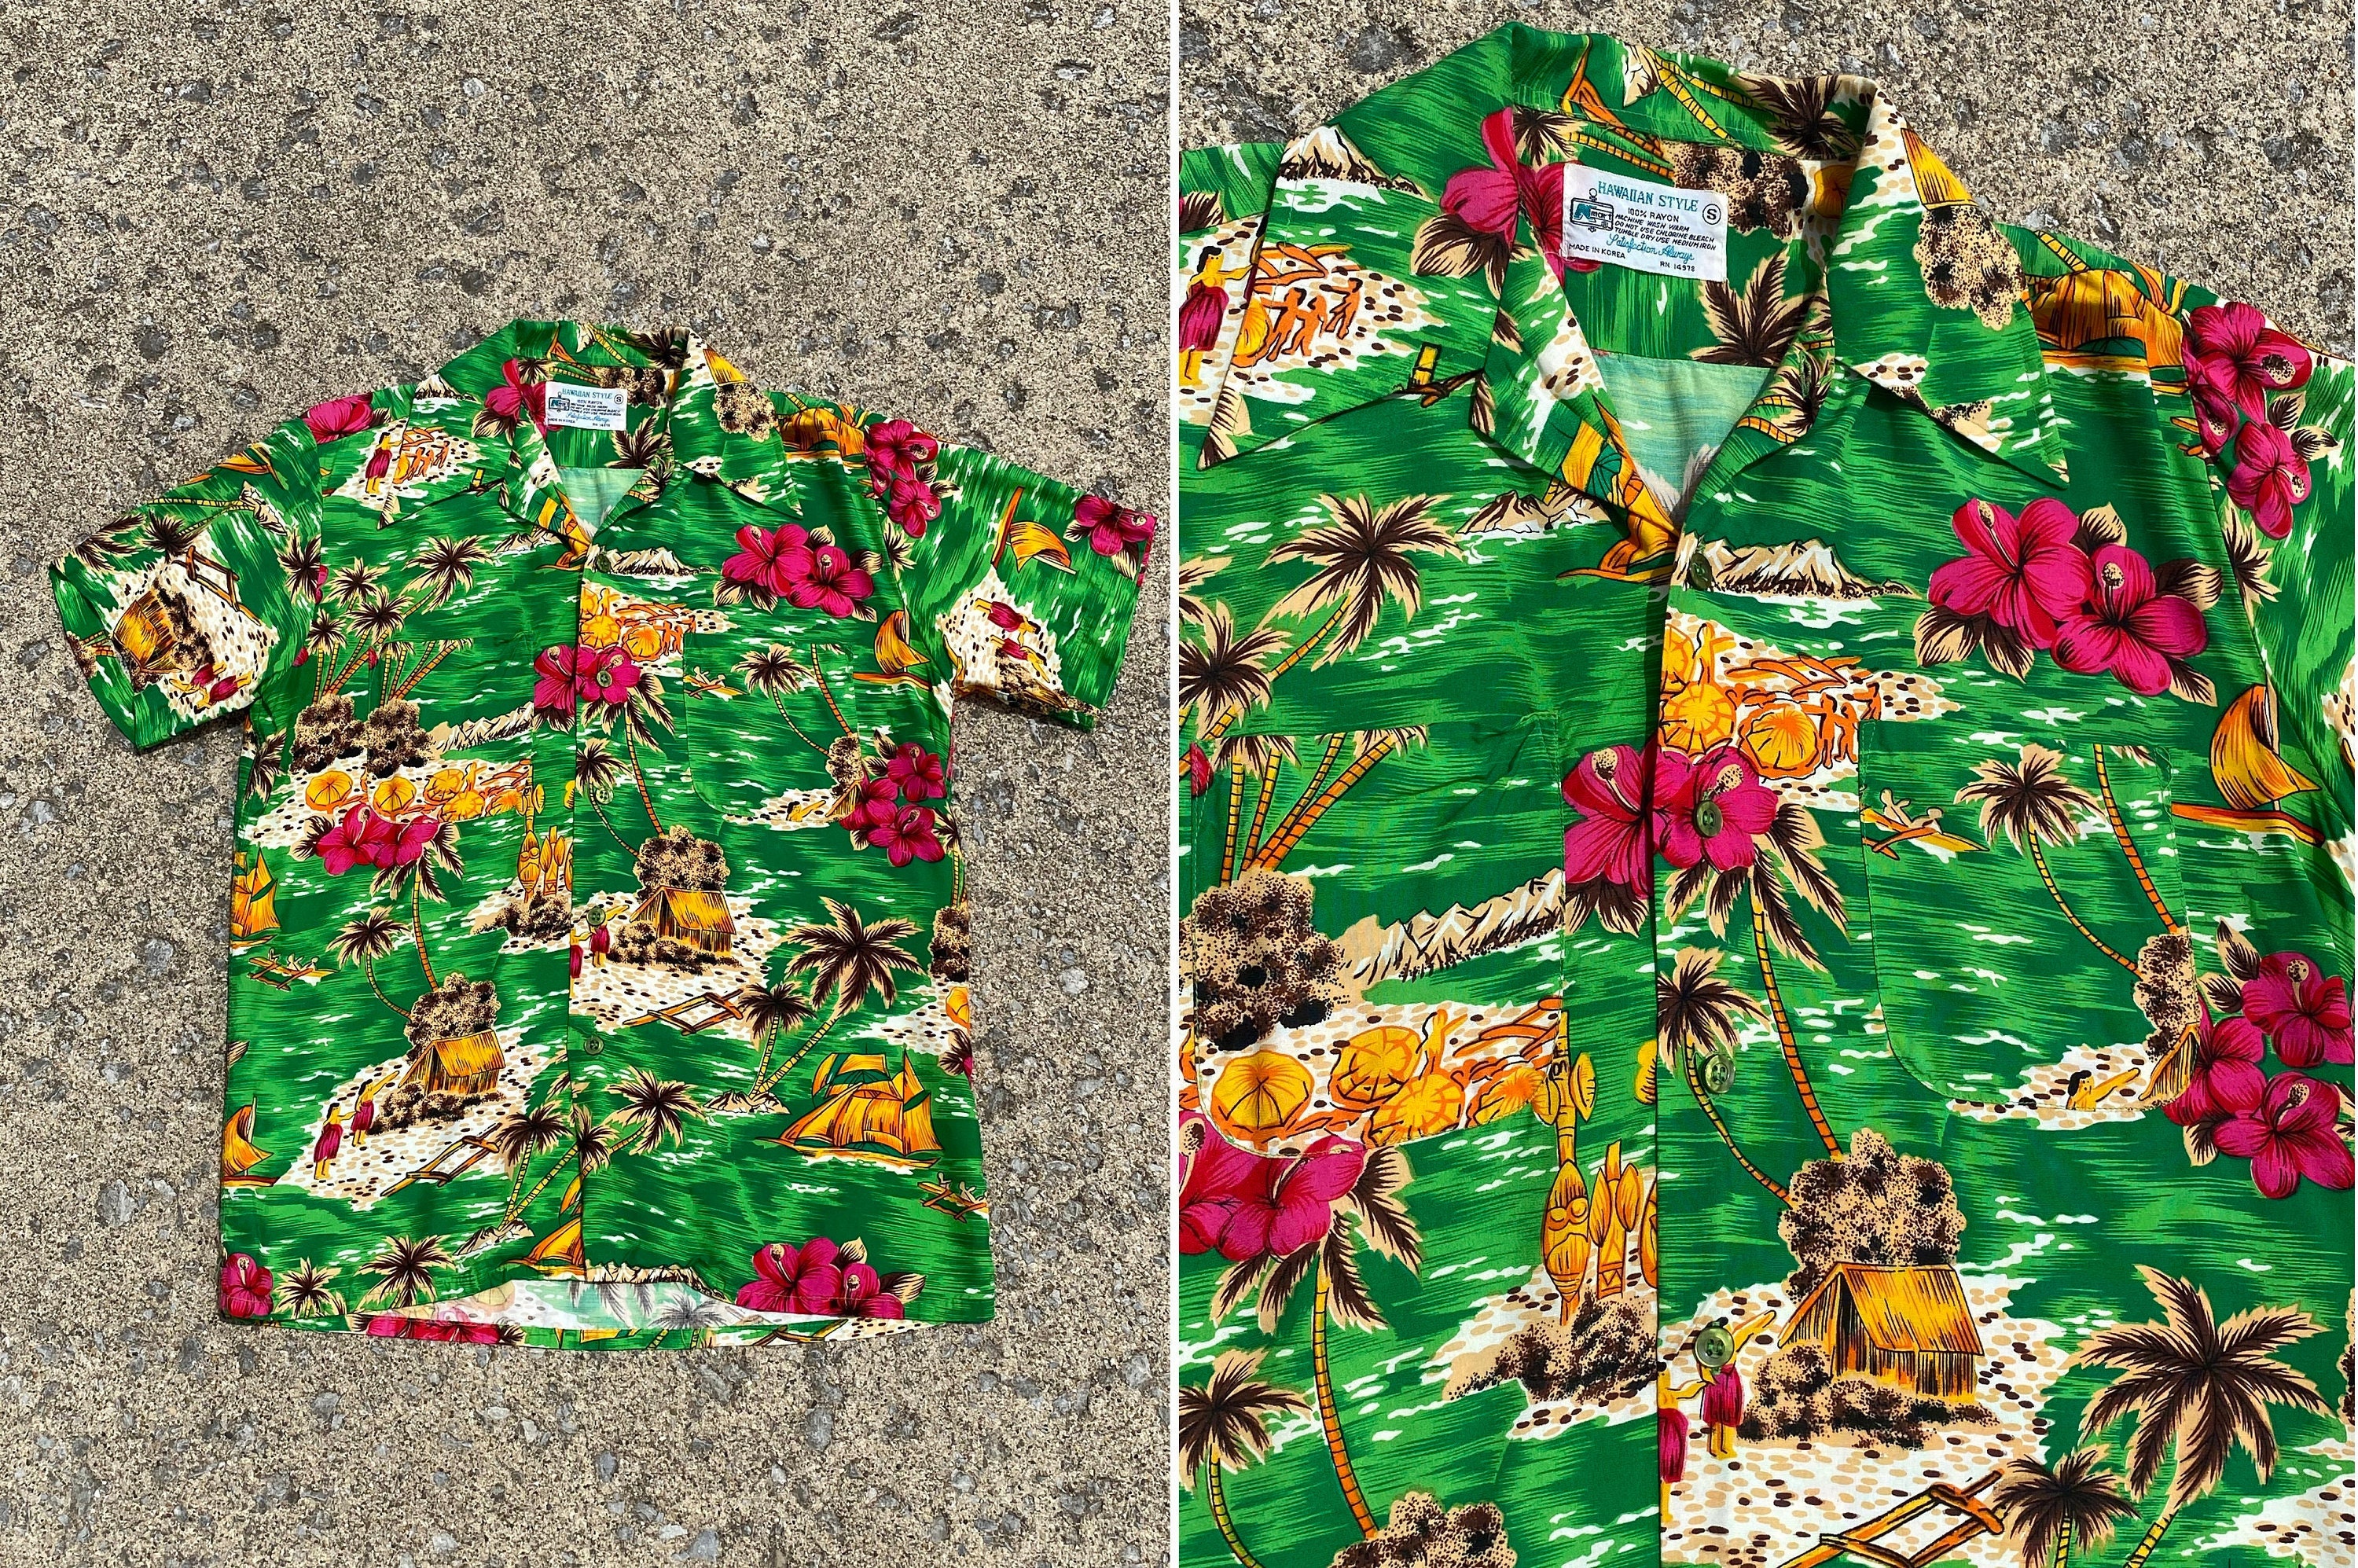 Vintage Hutspah Mens Abstract Hawaiian Disco LS Shirt Khaki Rayon